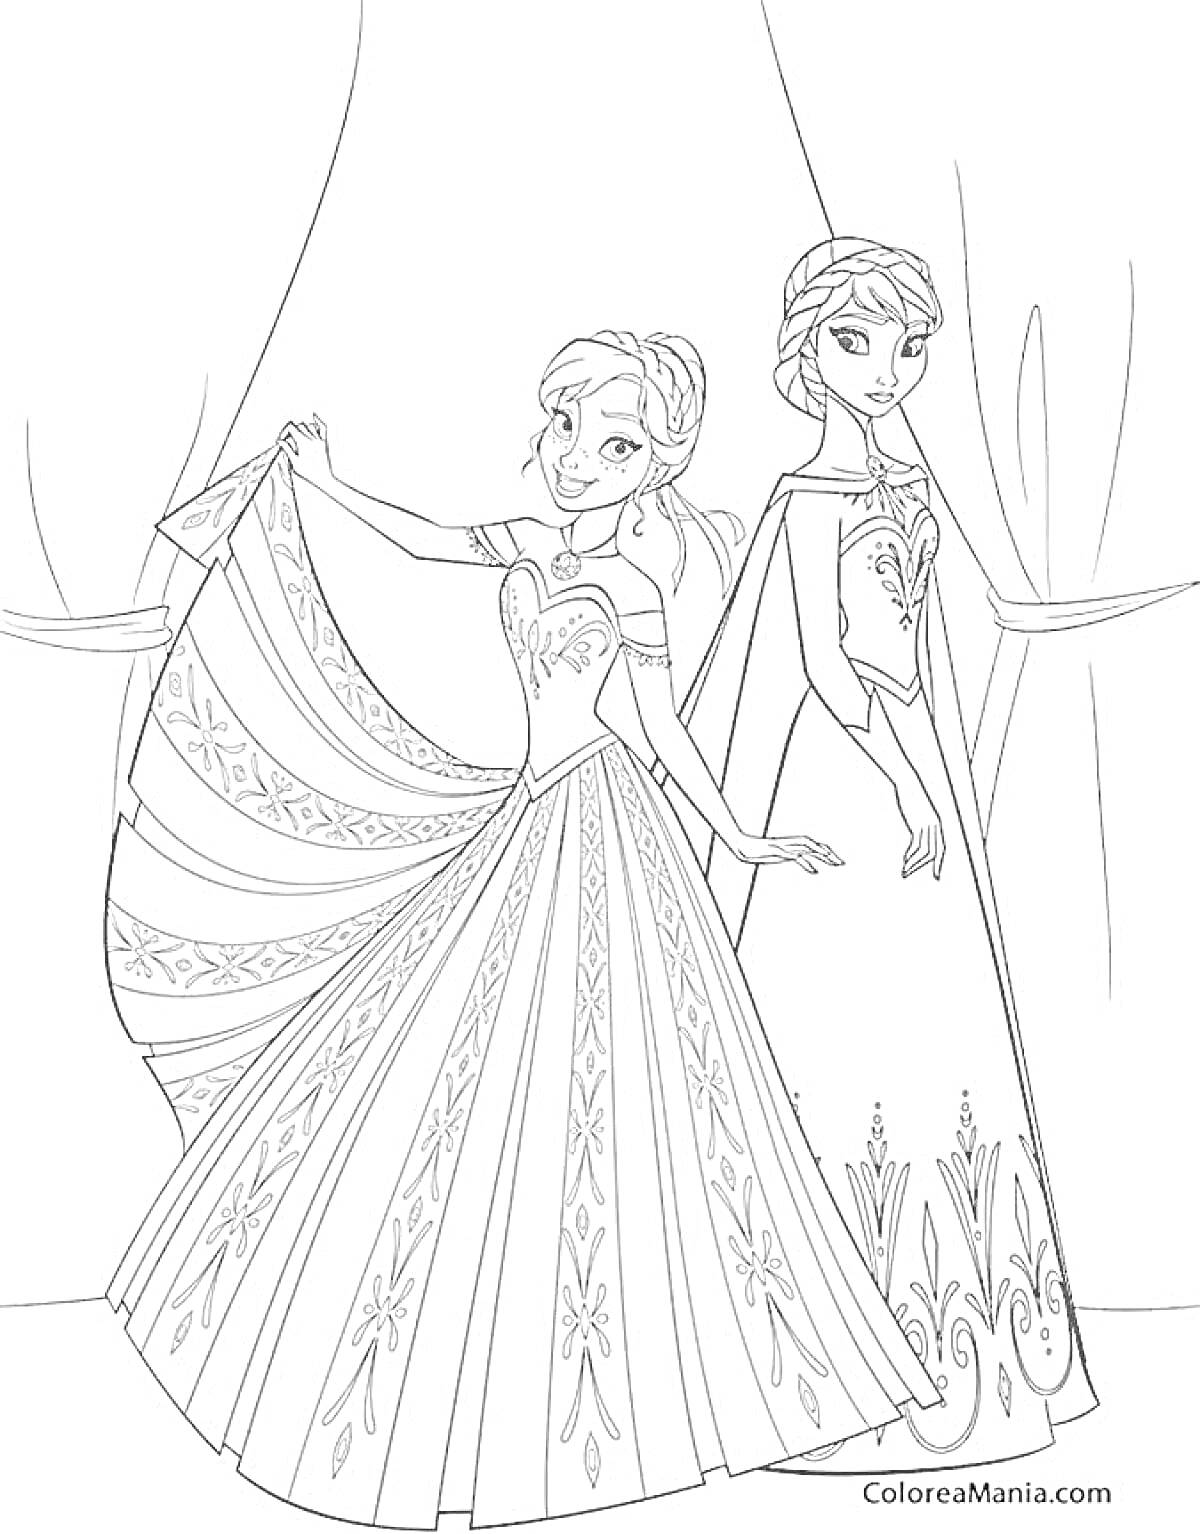 Раскраска Анна и Эльза на фоне занавеса в элегантных платьях